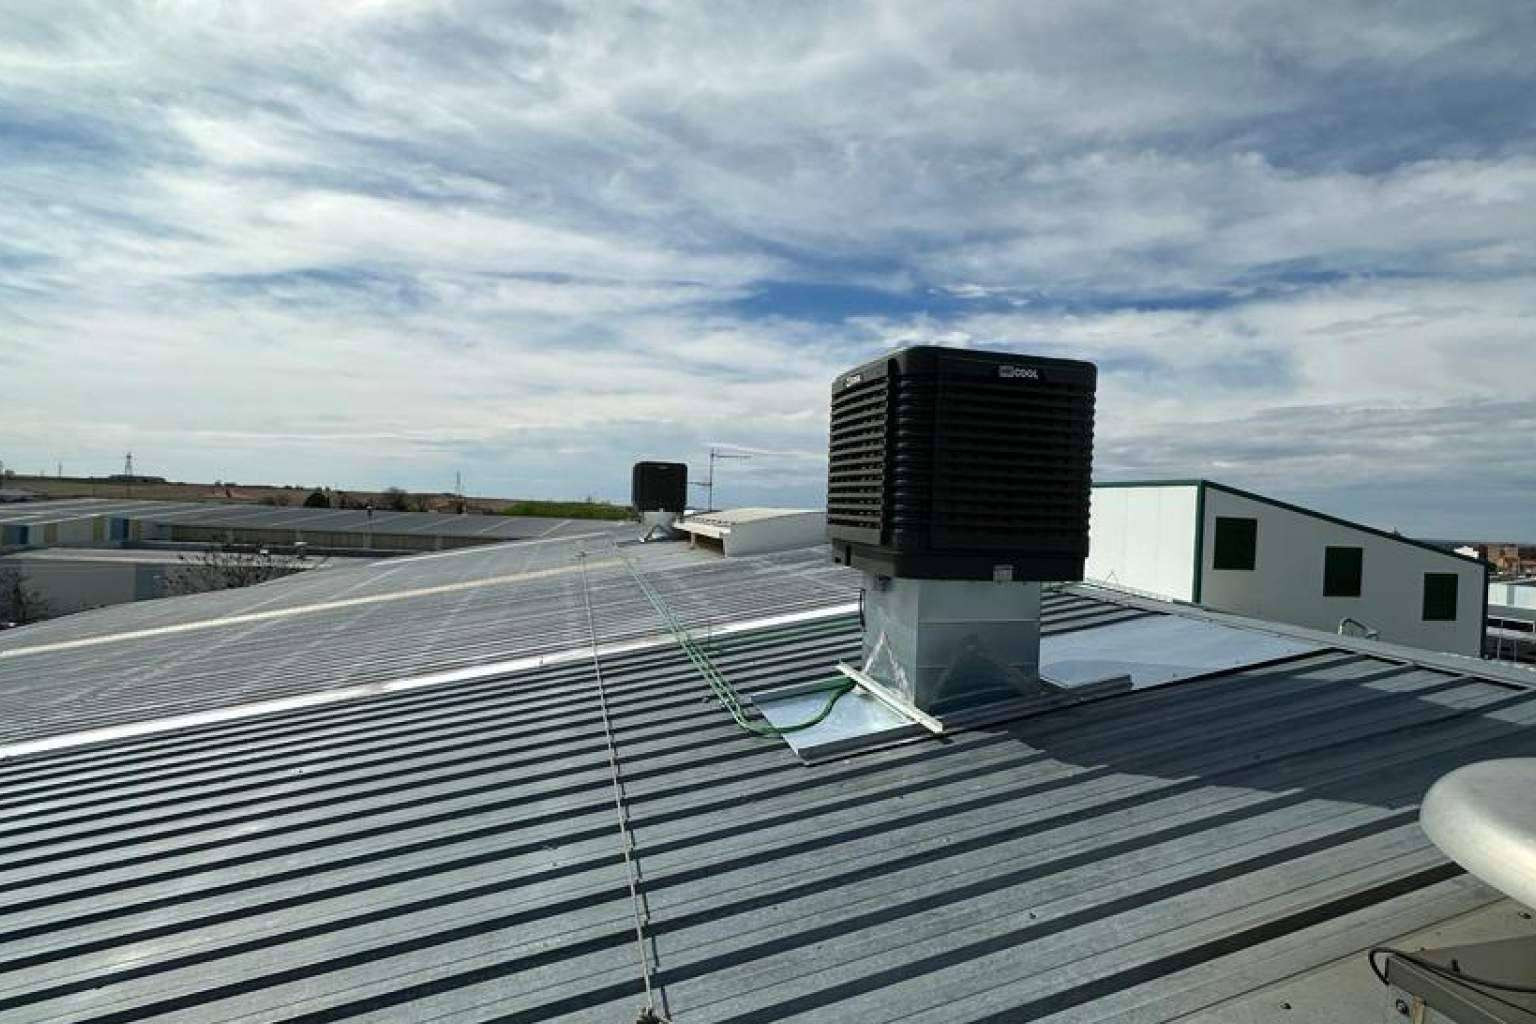  Soluciones de climatización para grandes espacios con Evaporalia 